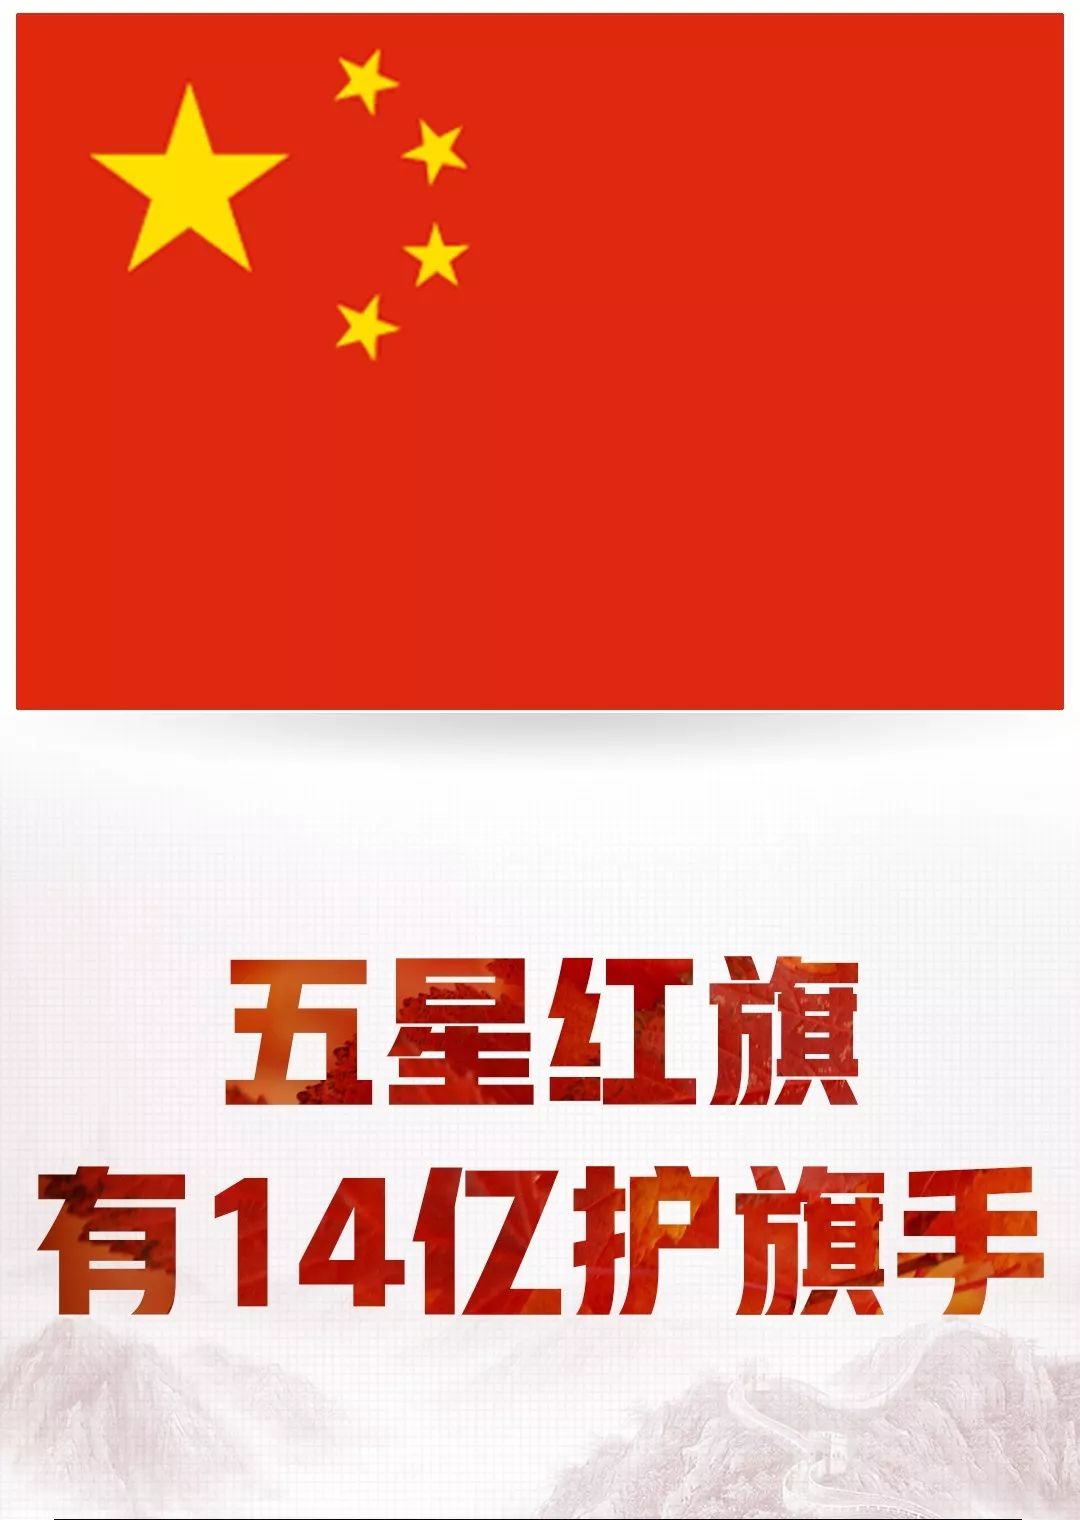 号中国五星红旗小国旗手摇旗手价格质量 哪个牌子比较